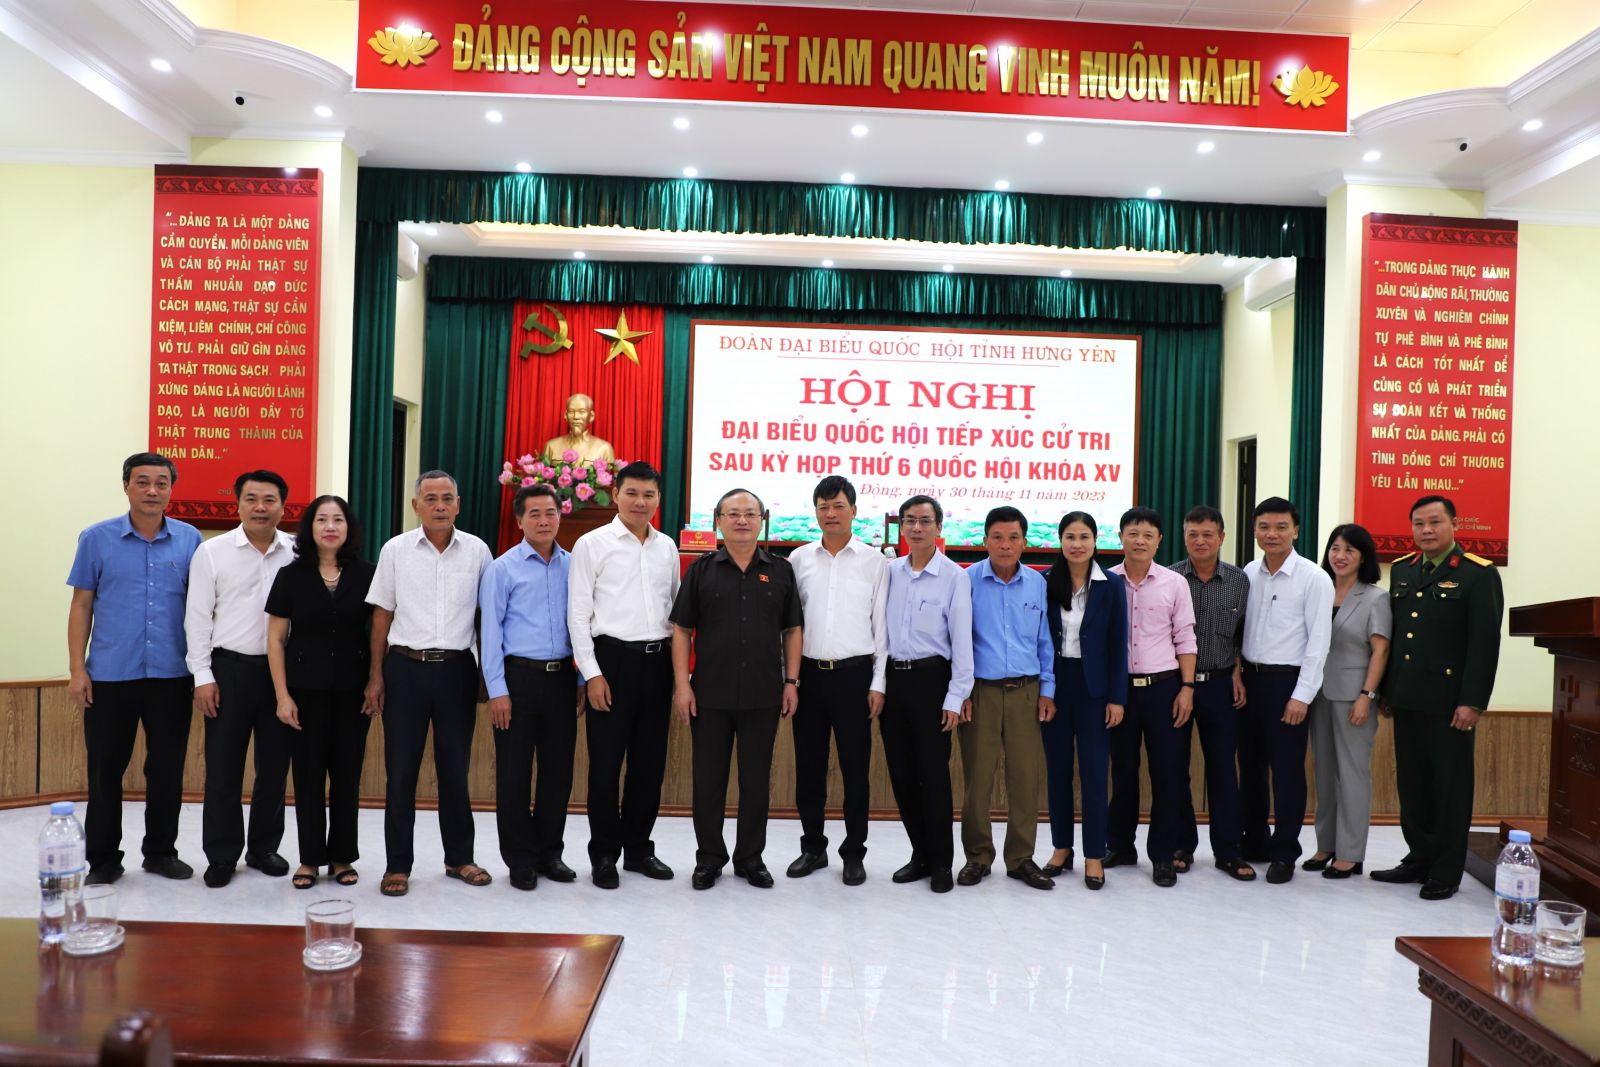 Đoàn đại biểu Quốc hội tỉnh Hưng Yên: Tiếp xúc cử tri sau kỳ họp thứ 6 Quốc hội khóa XV tại huyện Kim Động